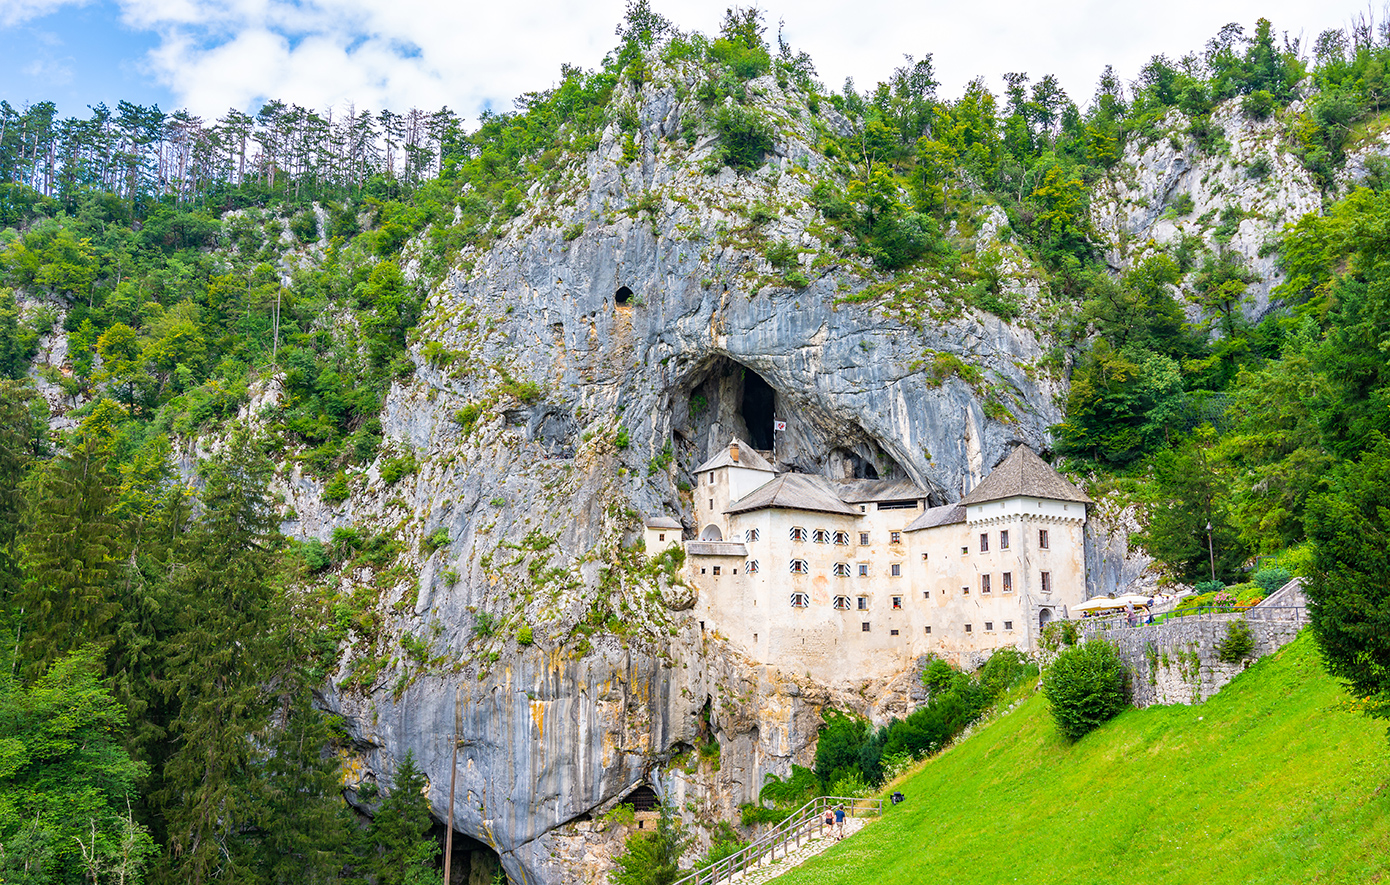 Το κάστρο μέσα σε σπηλιά που βρήκε ανορθόδοξο θάνατο ο «Ρομπέν των δασών» της Σλοβενίας